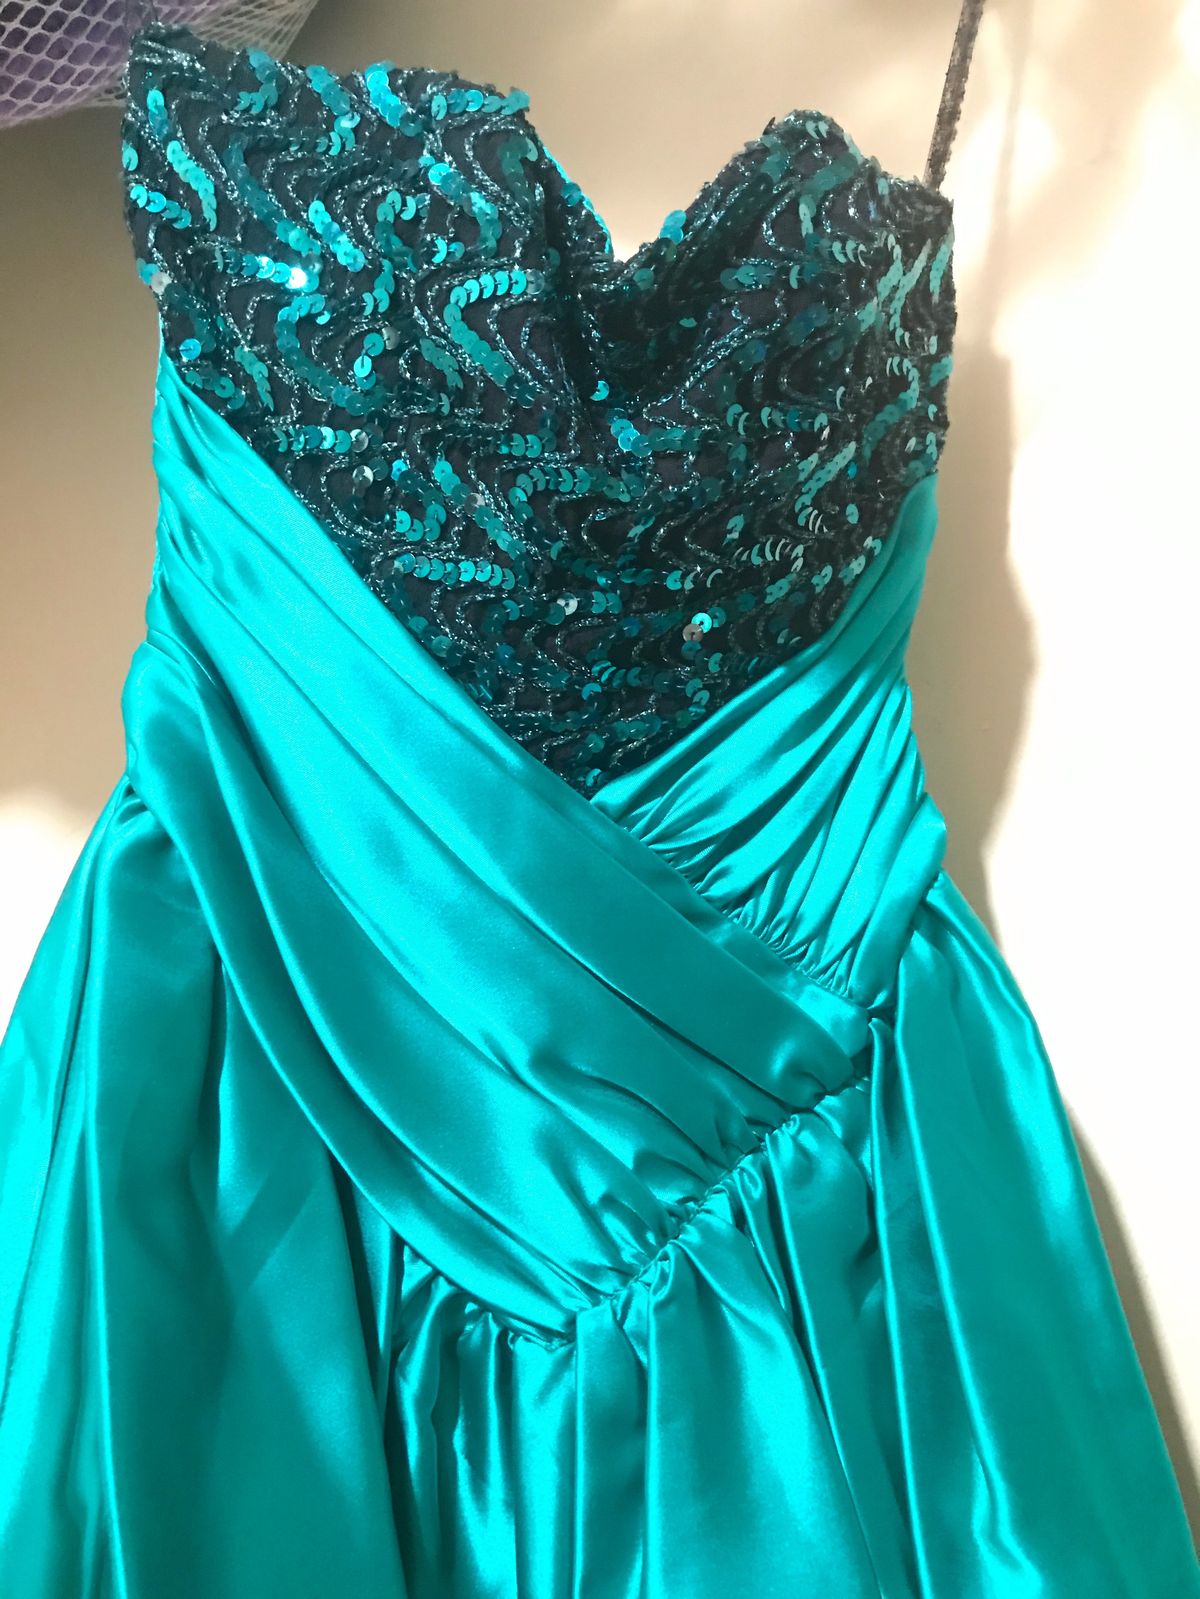 Zum Zum Size 4 Prom Sequined Green Cocktail Dress on Queenly